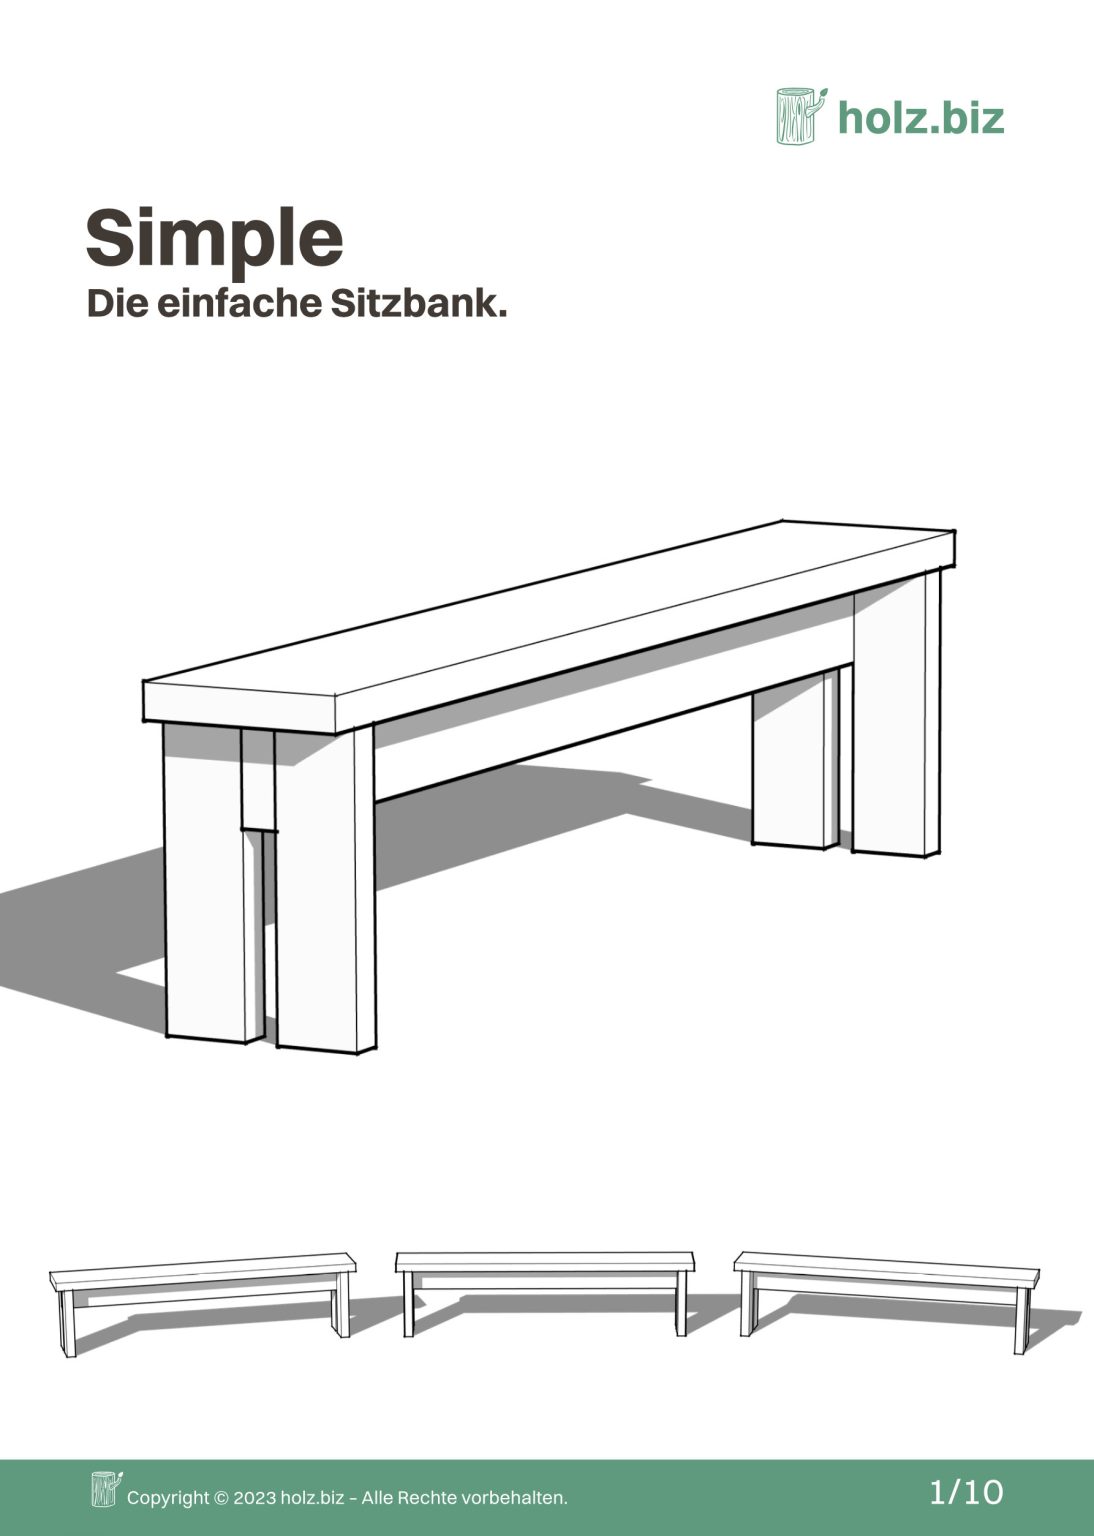 SIMPLE Sitzbank selber bauen mit dem gratis Bauplan auf holz.biz